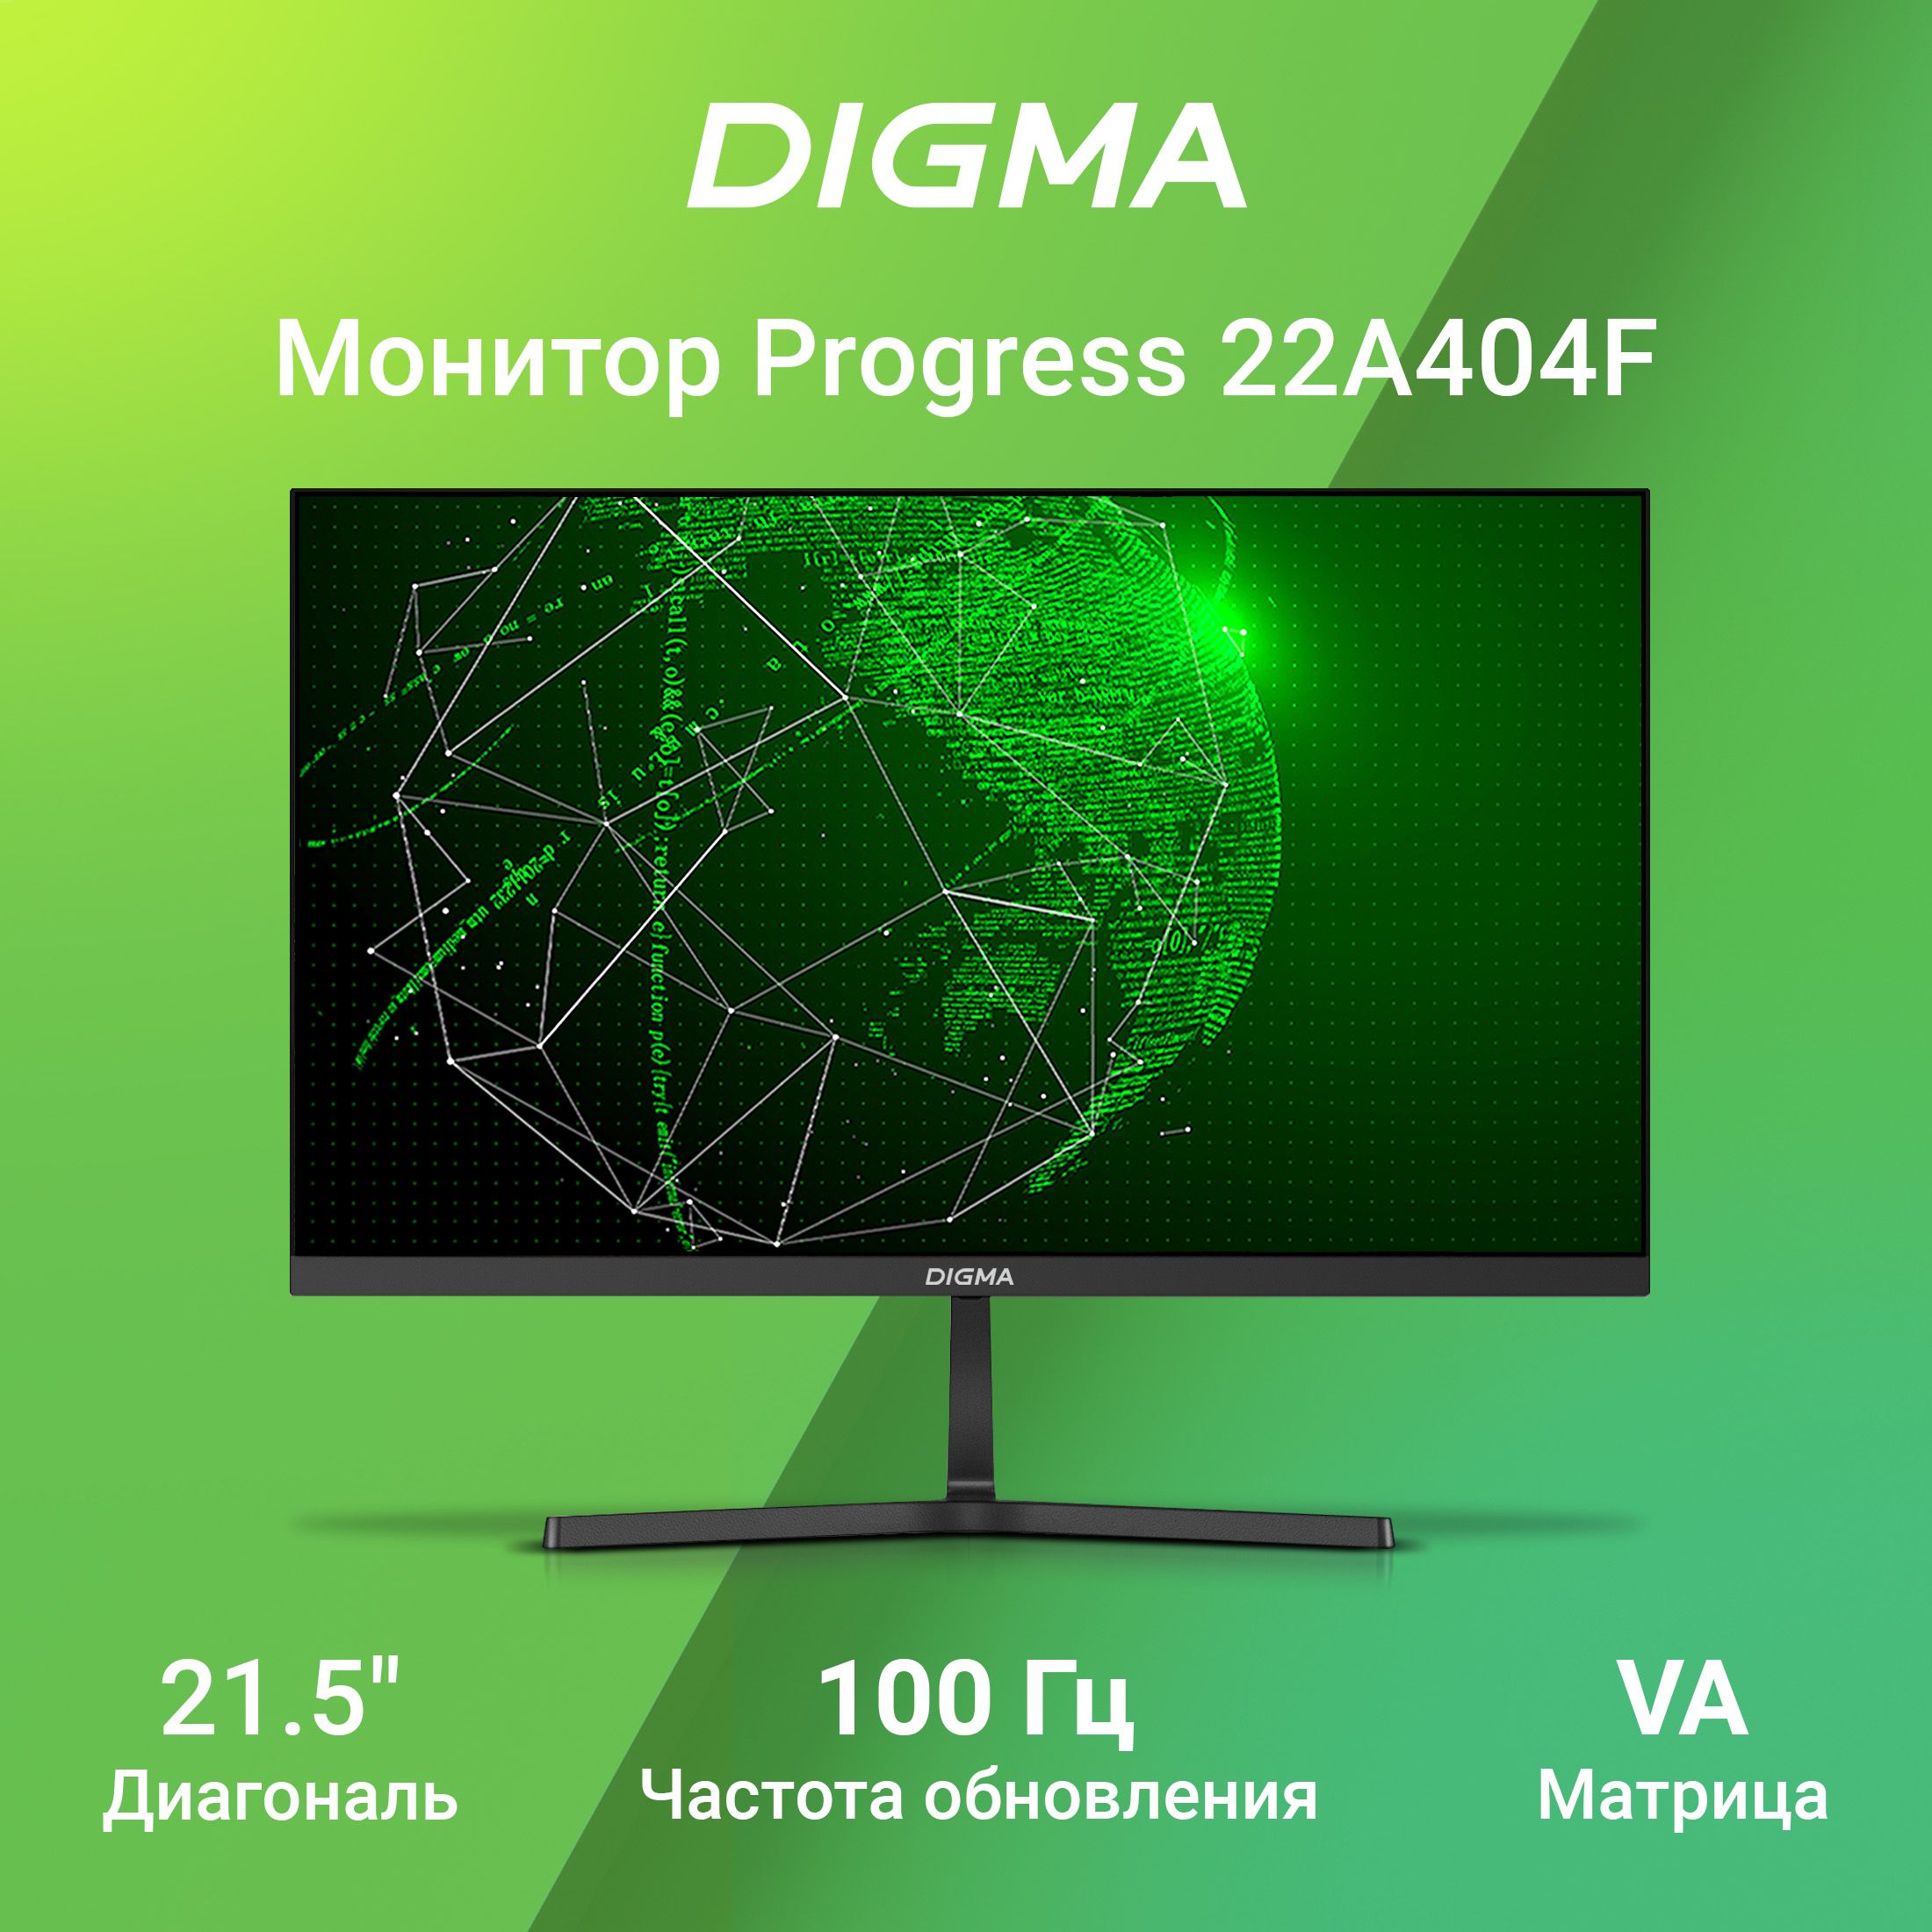 Digma21.5"МониторProgress22A404F1920x1080,счастотой100Гц,антибликовоепокрытие,черный